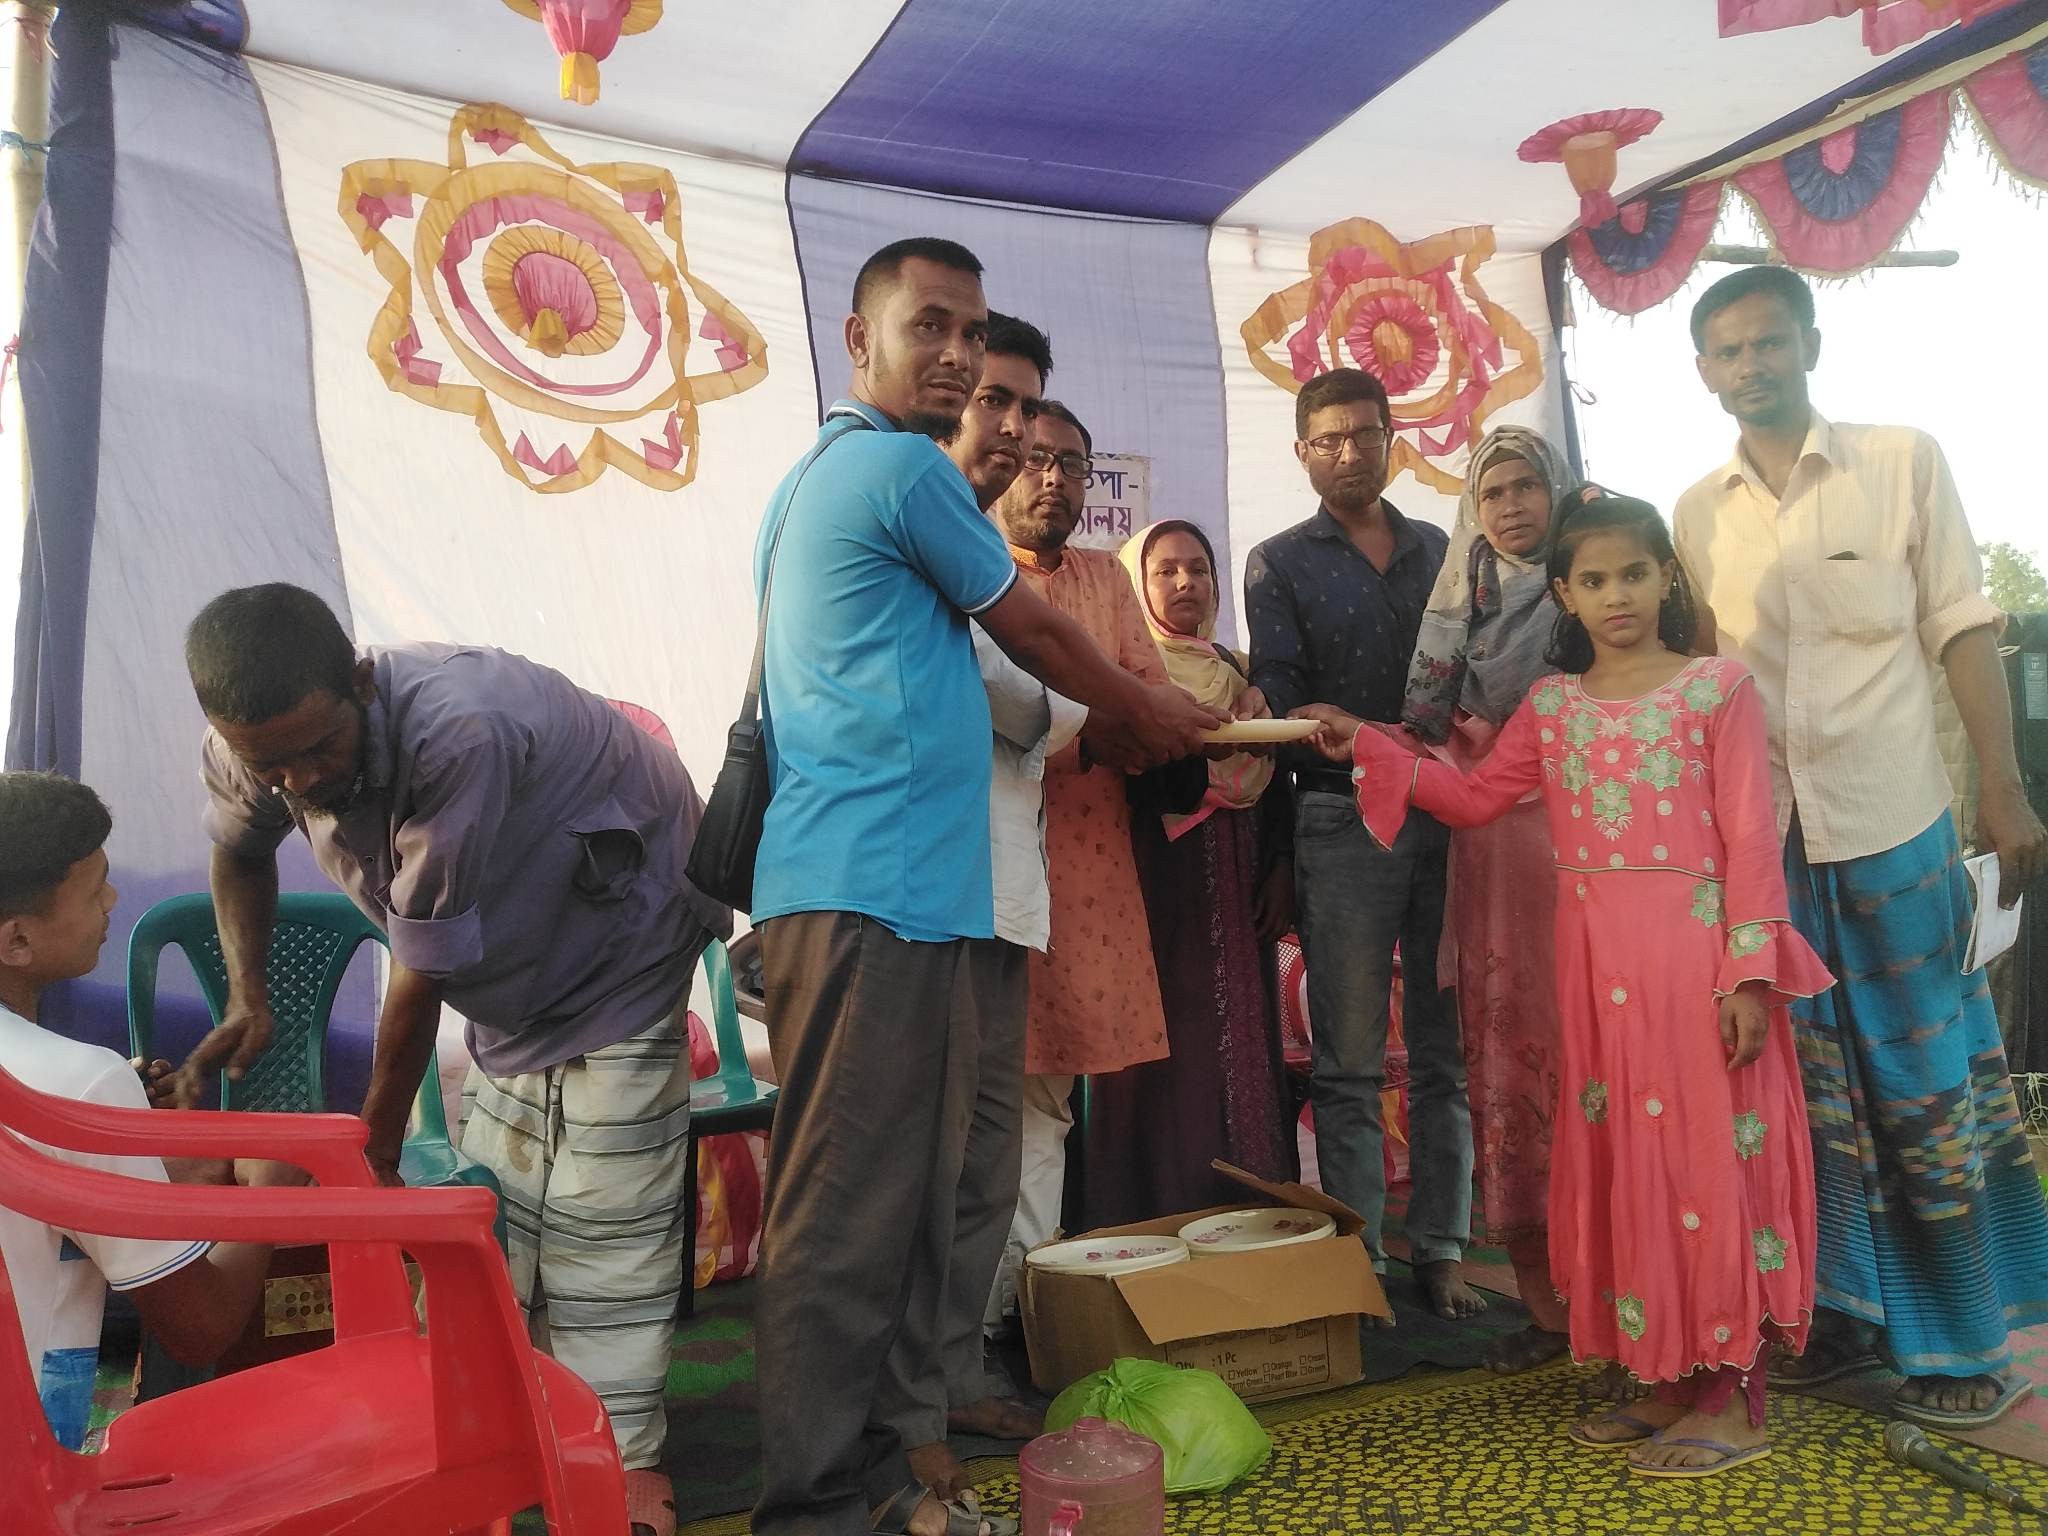 নওগাঁর সাপাহার উত্তর কোলাপাড়া উপ-নূষ্ঠানিক প্রাথঃ বিদ্যালয় এর বার্ষিক ক্রিয়া প্রতিযোগিতা অনুষ্ঠিত